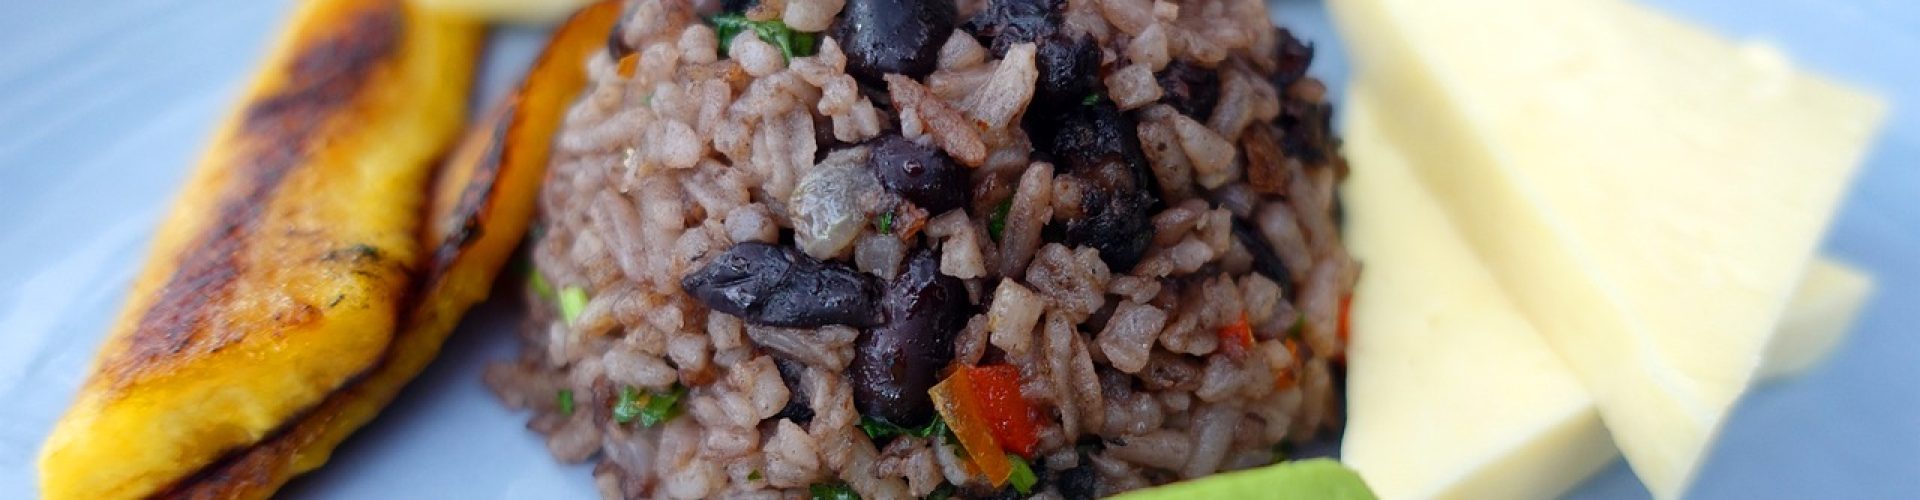 gallo pinto, rice, beans-7611012.jpg